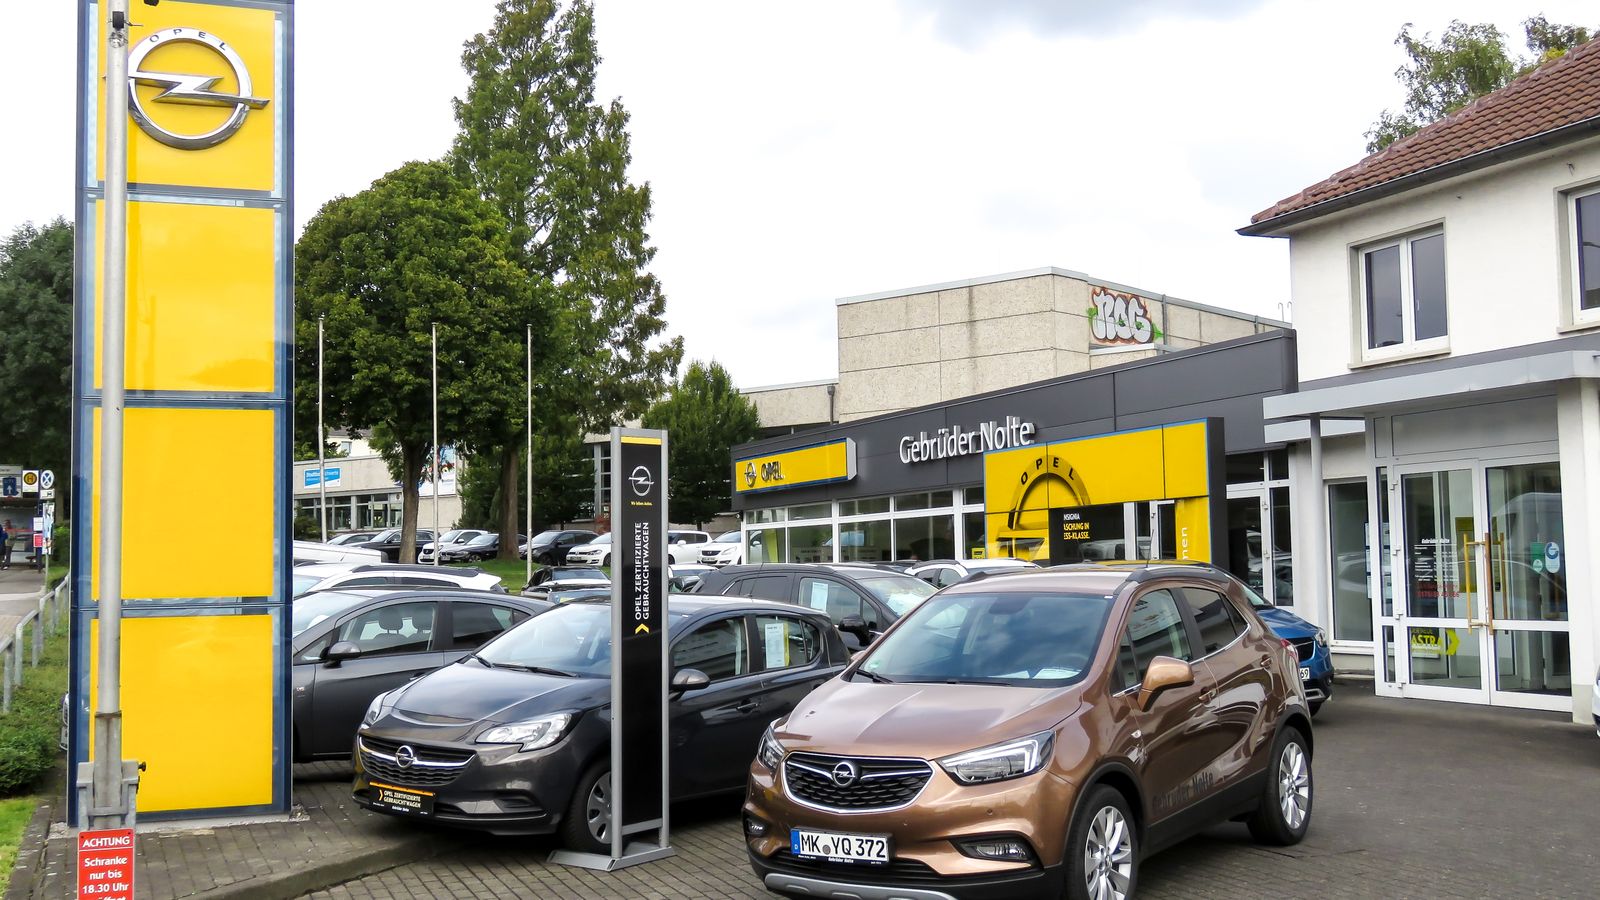 Gebrüder Nolte Opel Automobile in Schwerte ⇒ in Das Örtliche